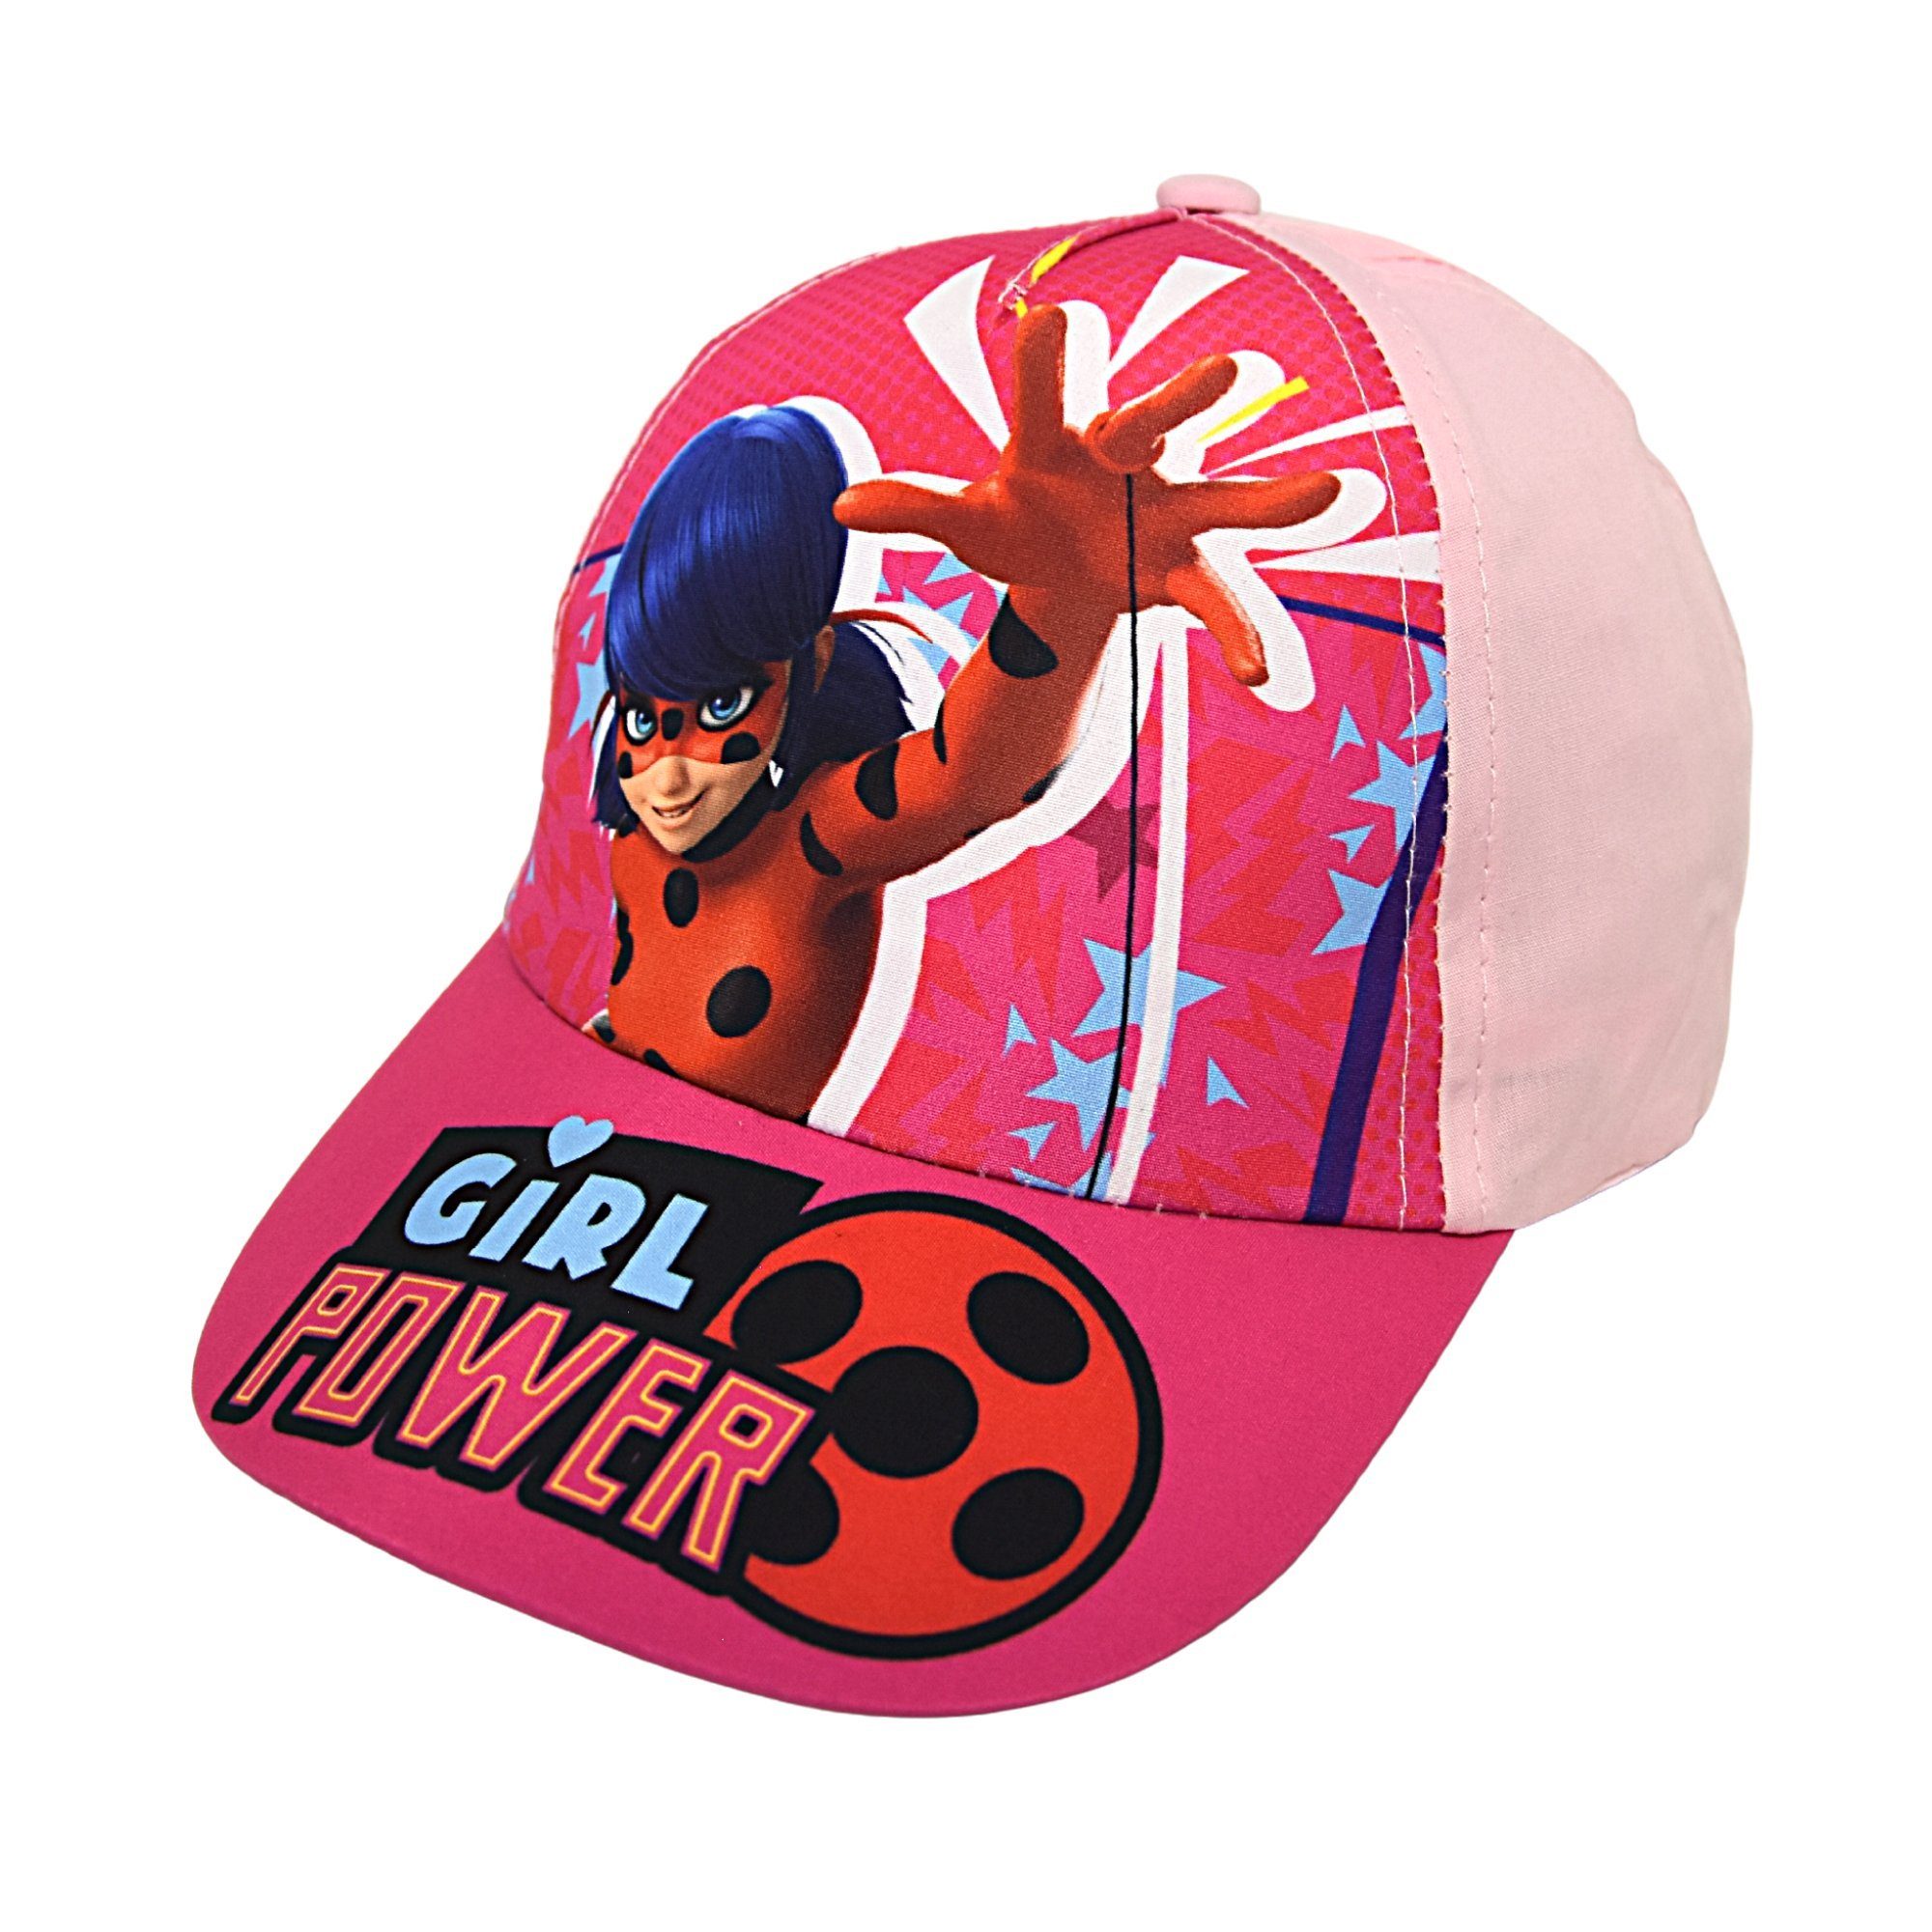 Größe Power Baseball Sommerkappe 52-54 cm Rosa - Ladybug Miraculous Cap Girl